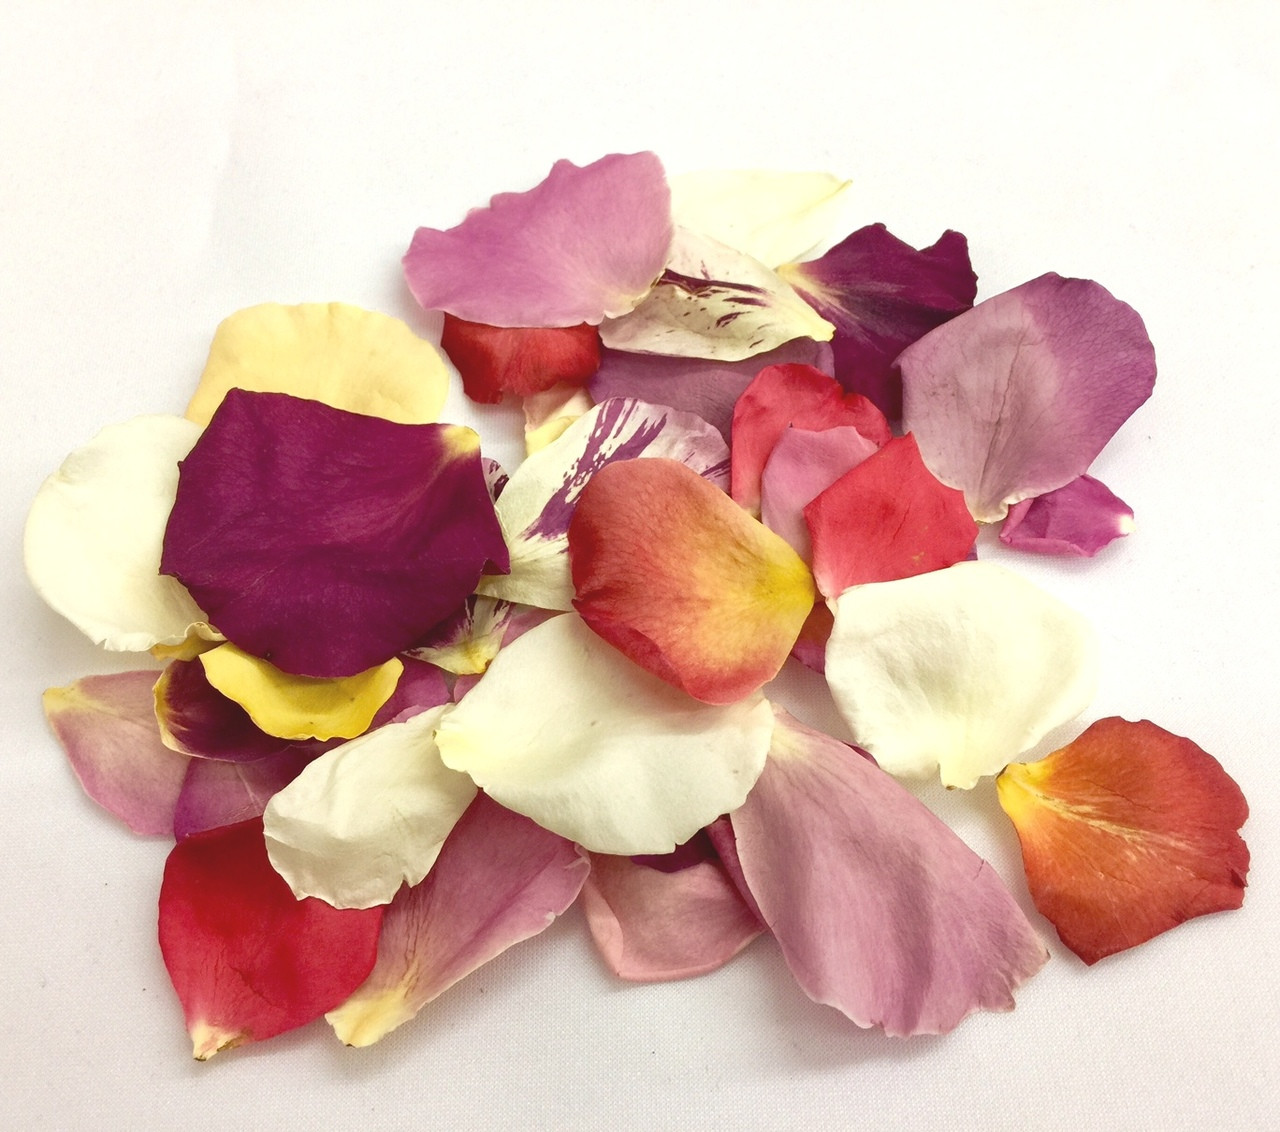 Merlot Real Rose Petals. Wedding Petals. 10 cups. Freeze-dried Petals. Rose  Petals. Flower Petals. Natural Confetti.Flower Girl Petals.USA